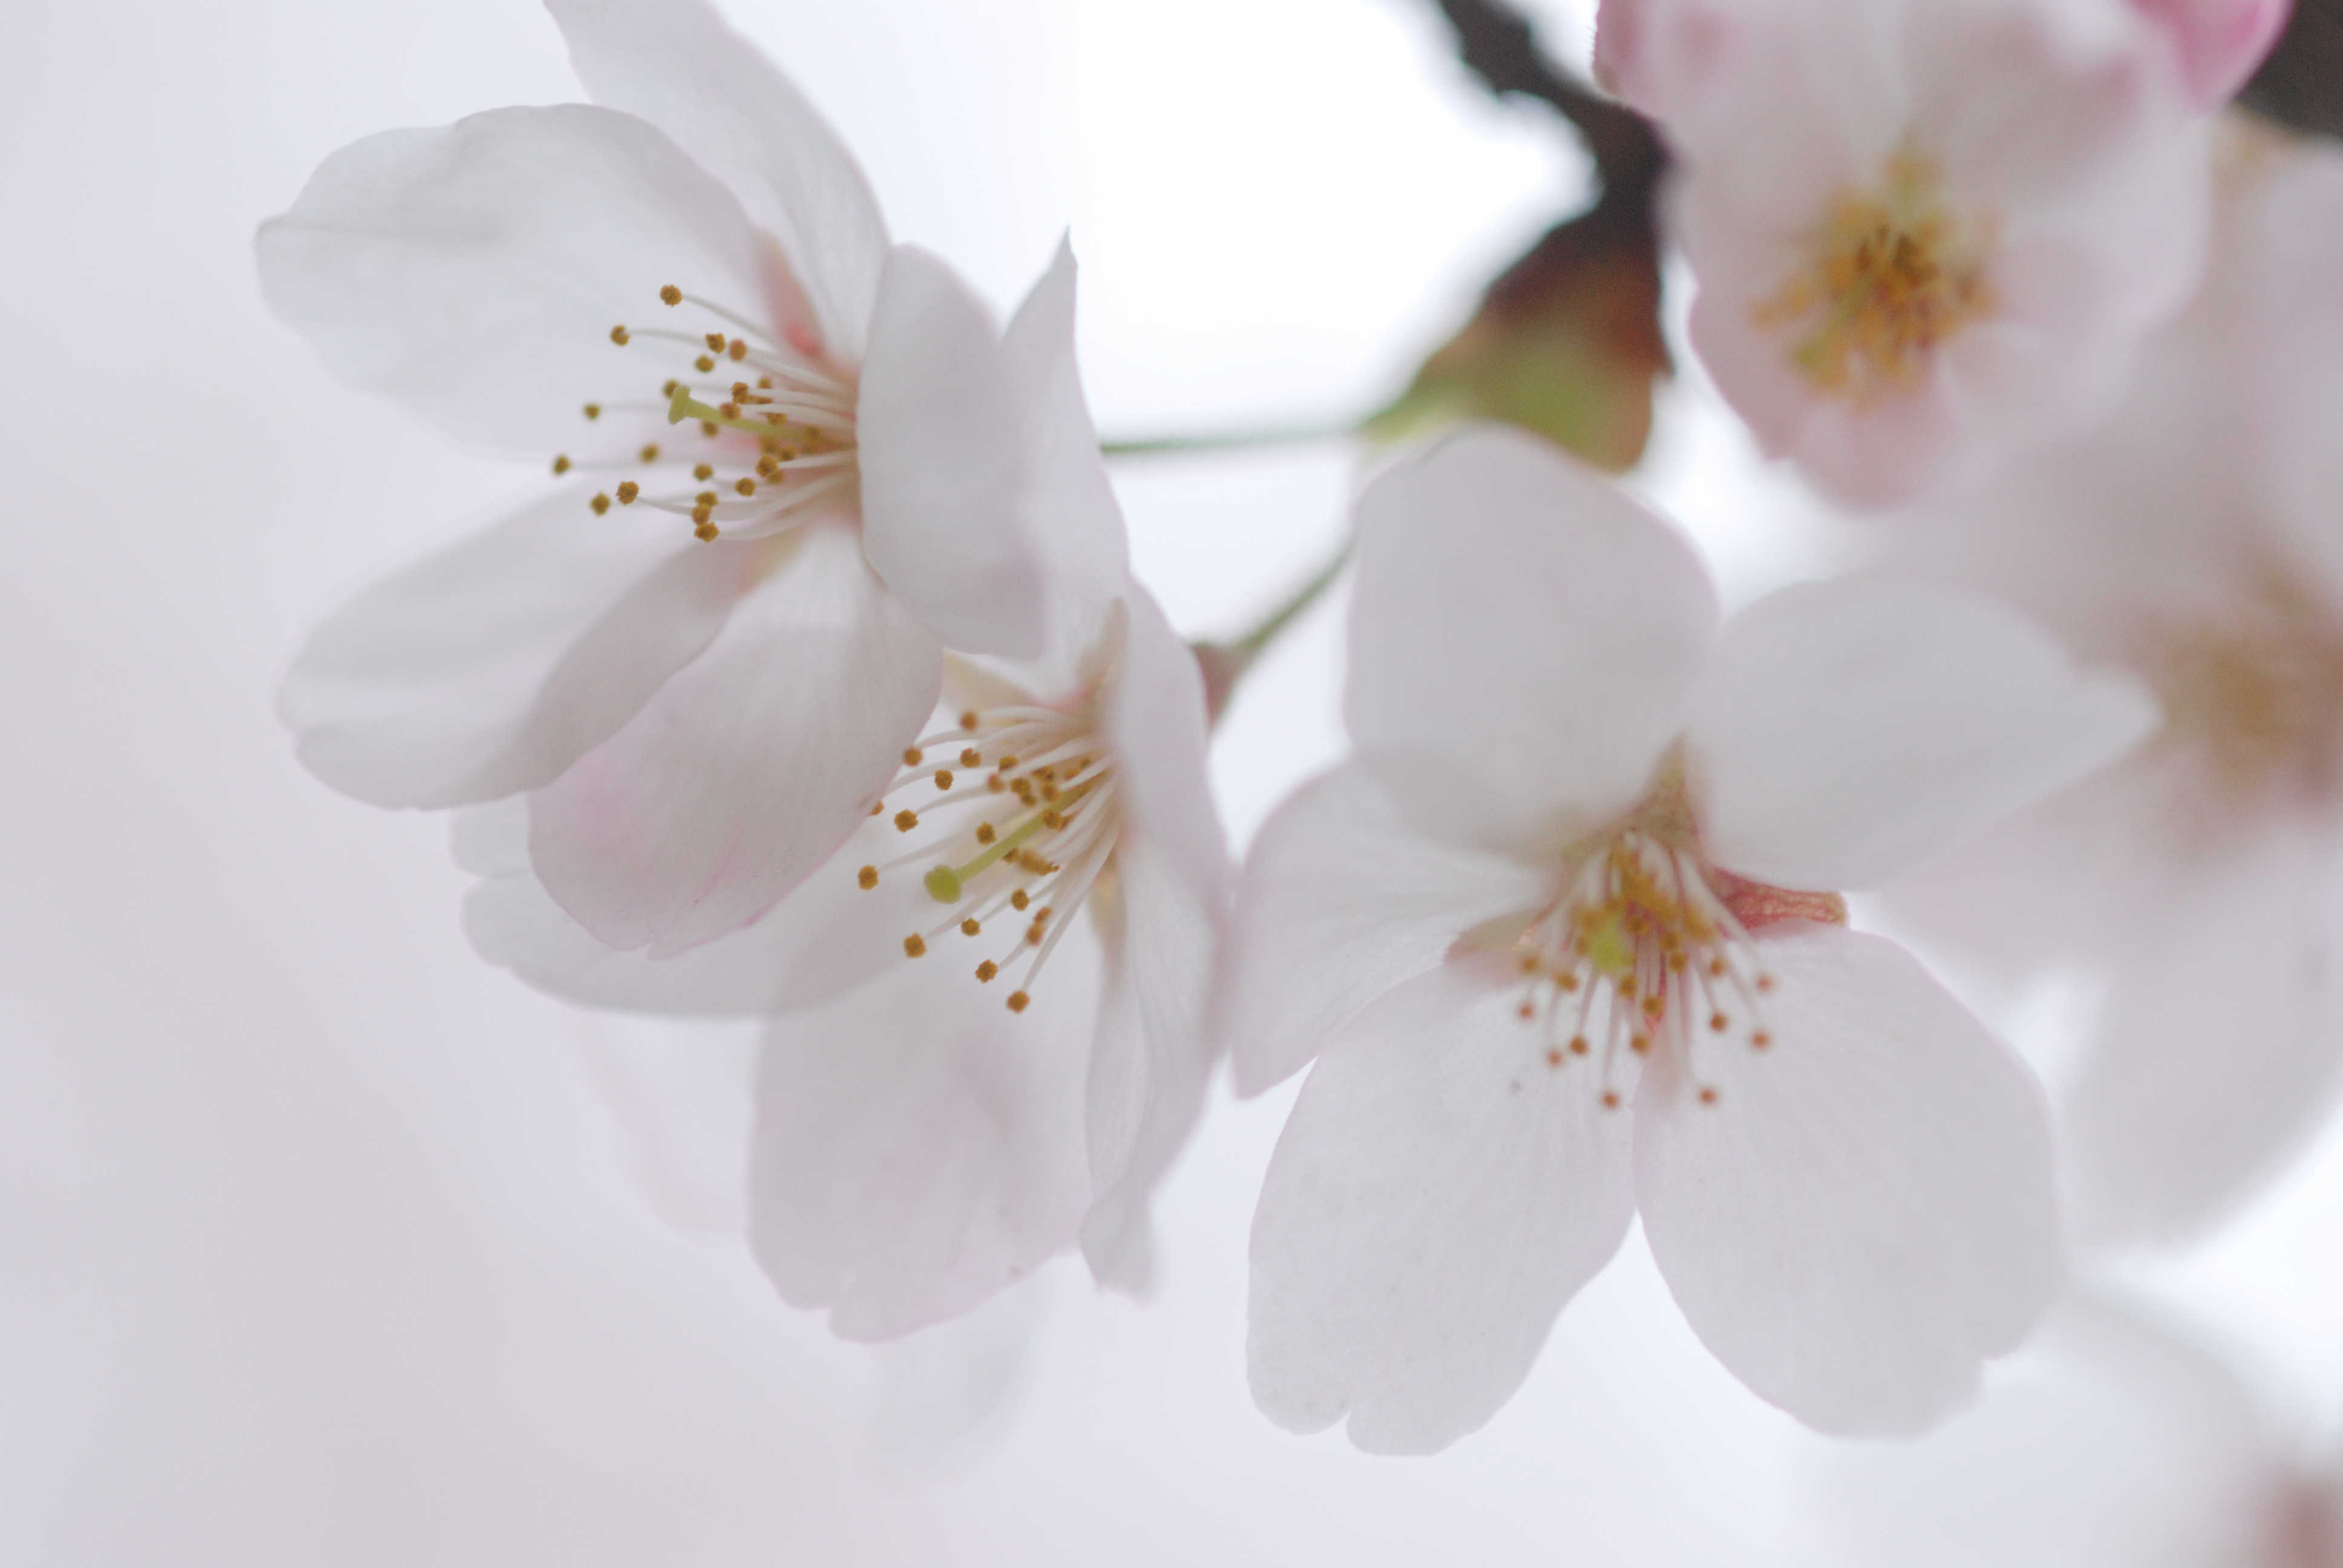 Vol 001 桜の花をアップで撮ってみよう ママカメラマン山ちゃんの写真教室 カメラのキタムラ